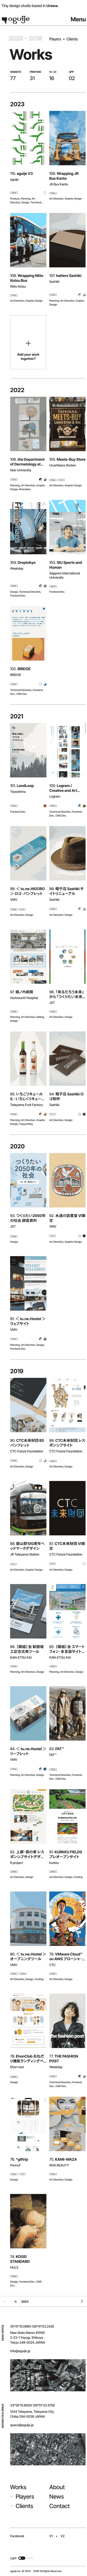 aguije | アグイジェ – 渋谷・館山・鎌倉・浦和が拠点の小さなデザインスタジオ。のモバイルサイズの投稿一覧(記事/商品など)画像